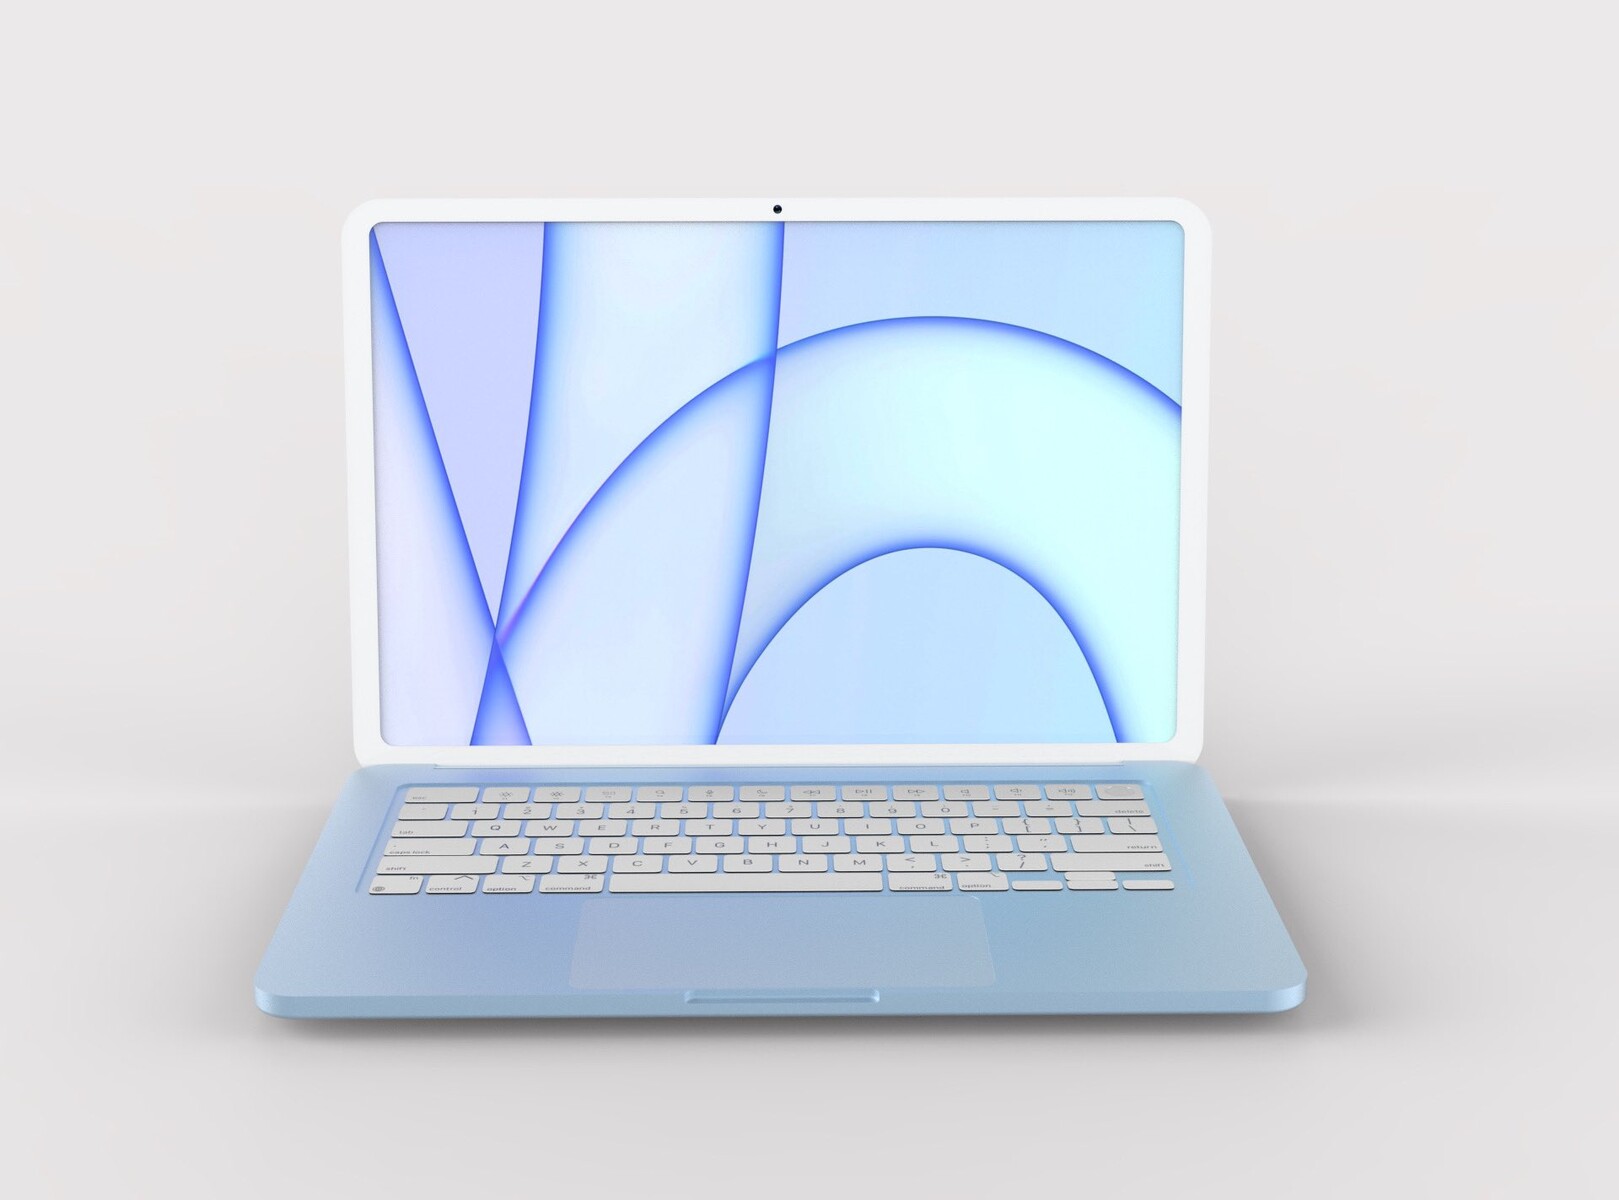 Apple lavora a MacBook Air più sottile e leggero atteso nel 2021 o 2022 